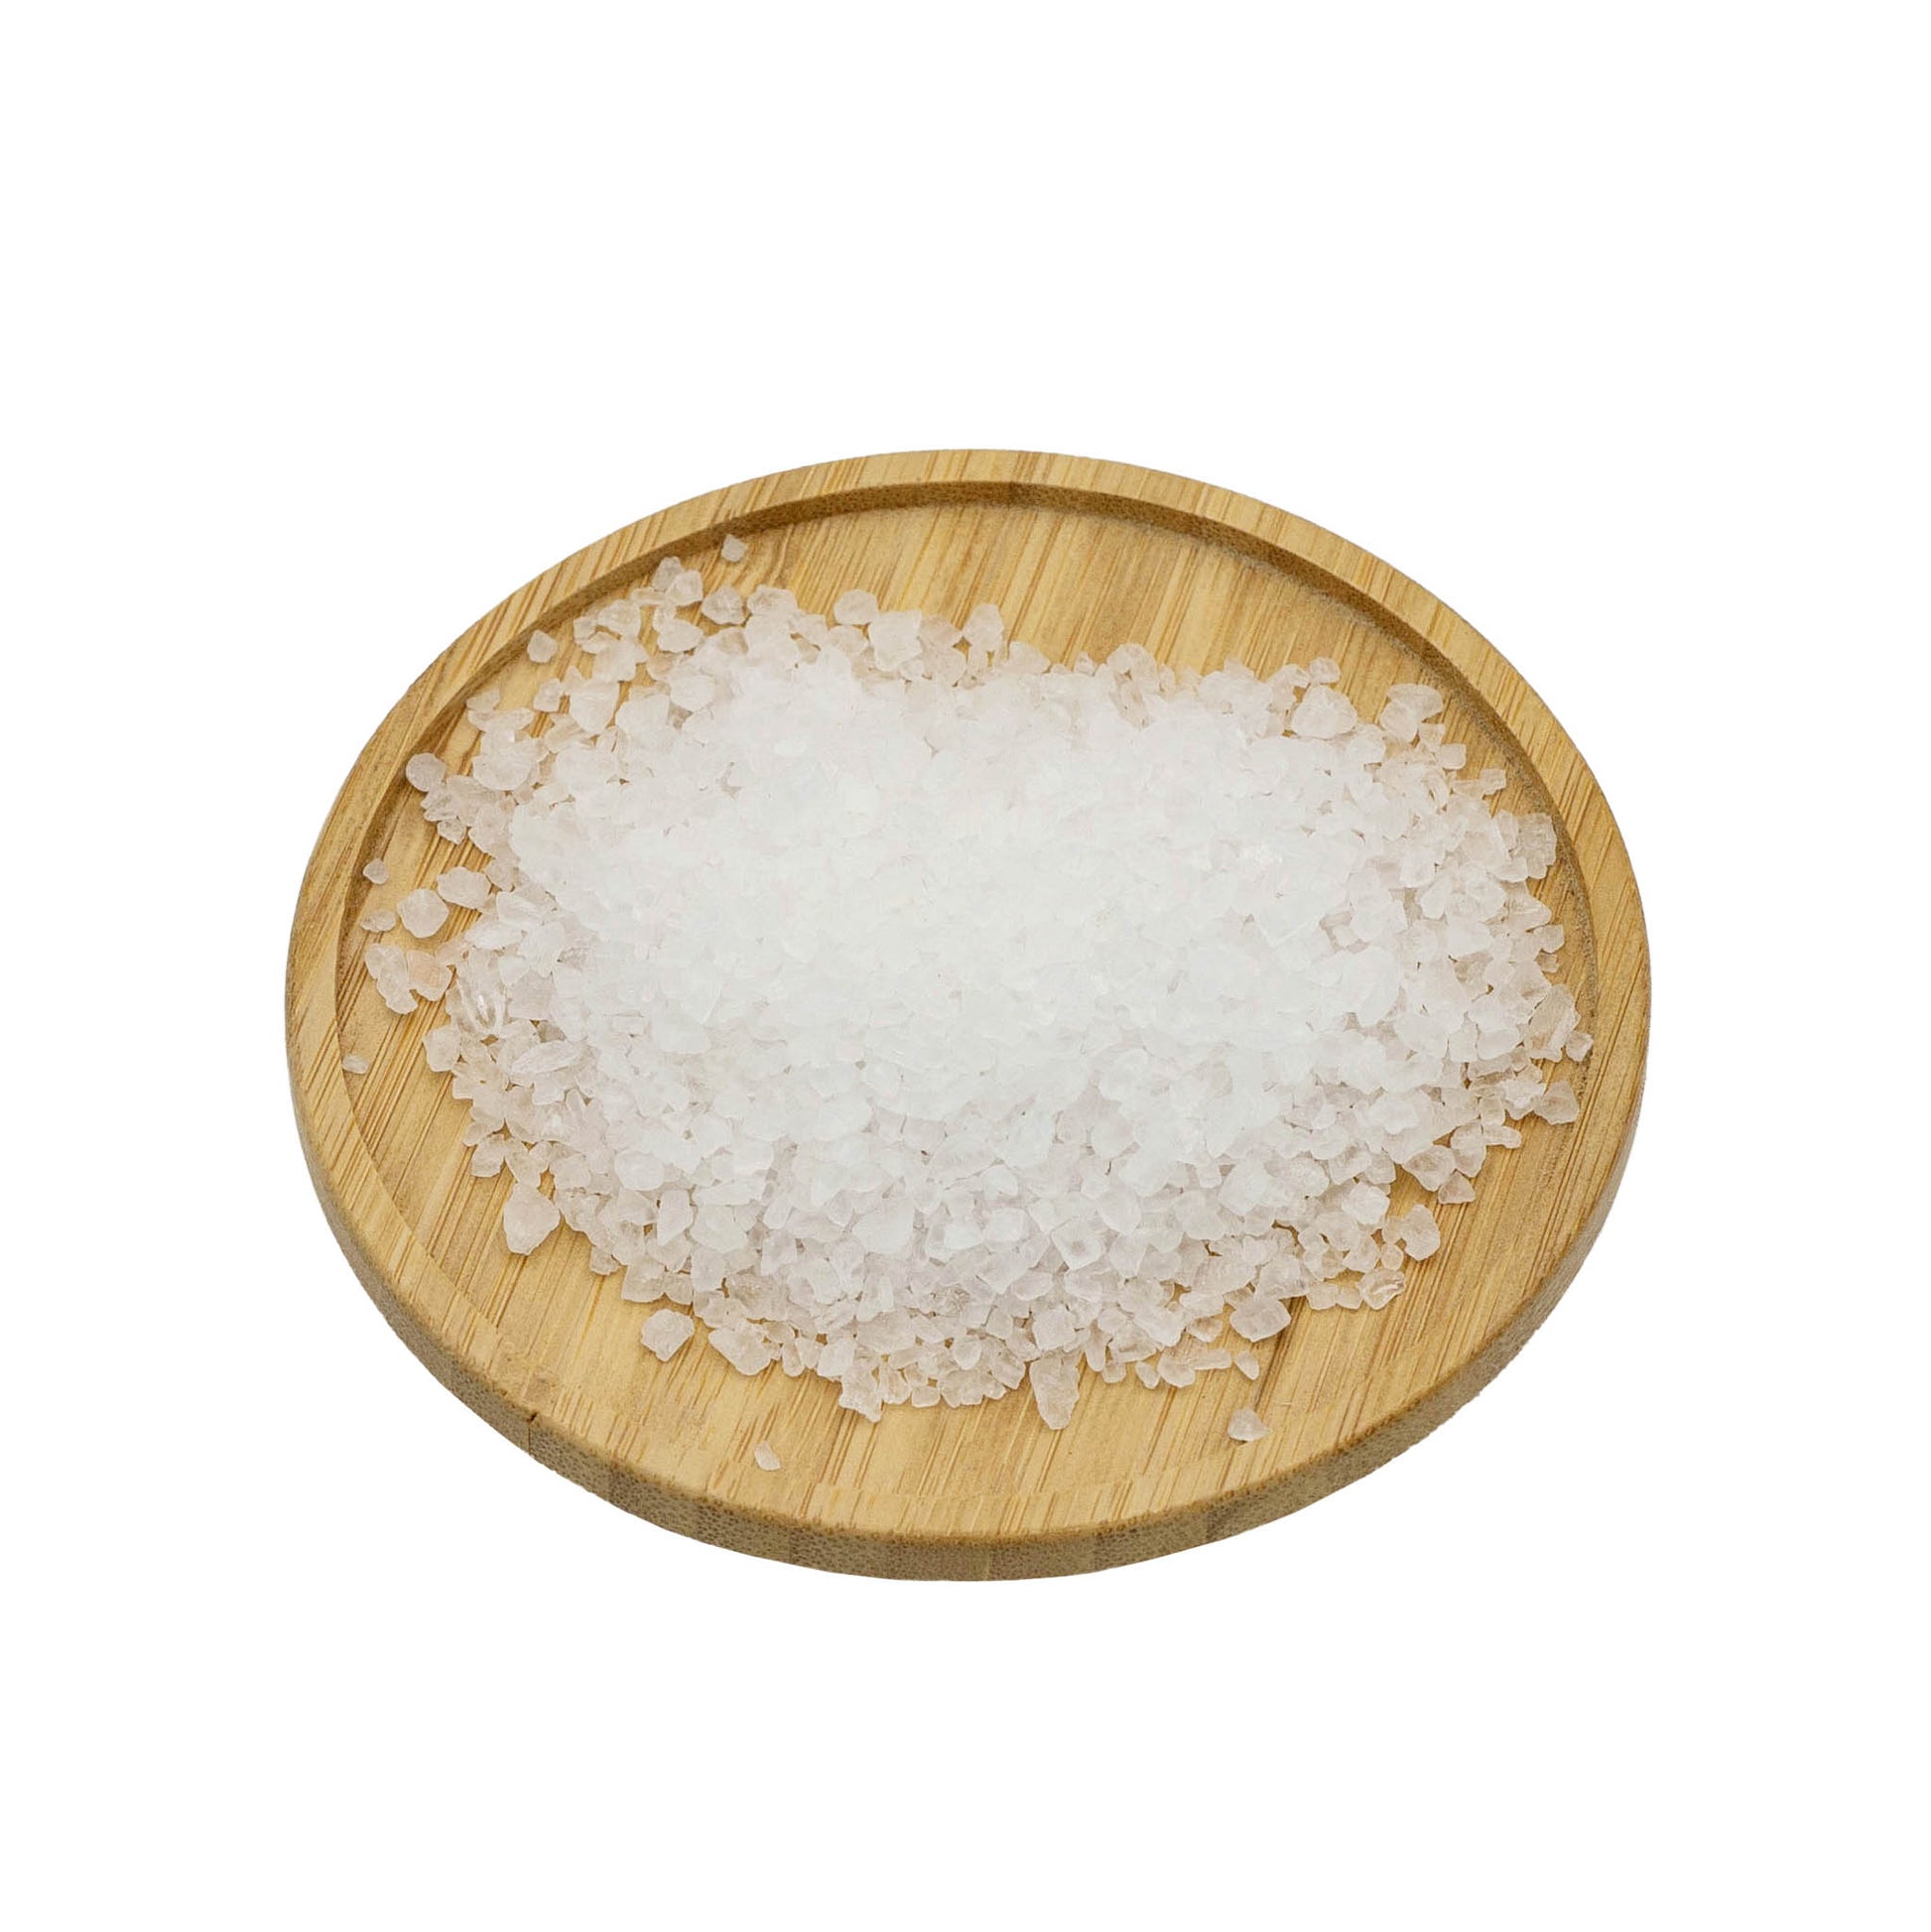 1kg bag of coarse sea salt